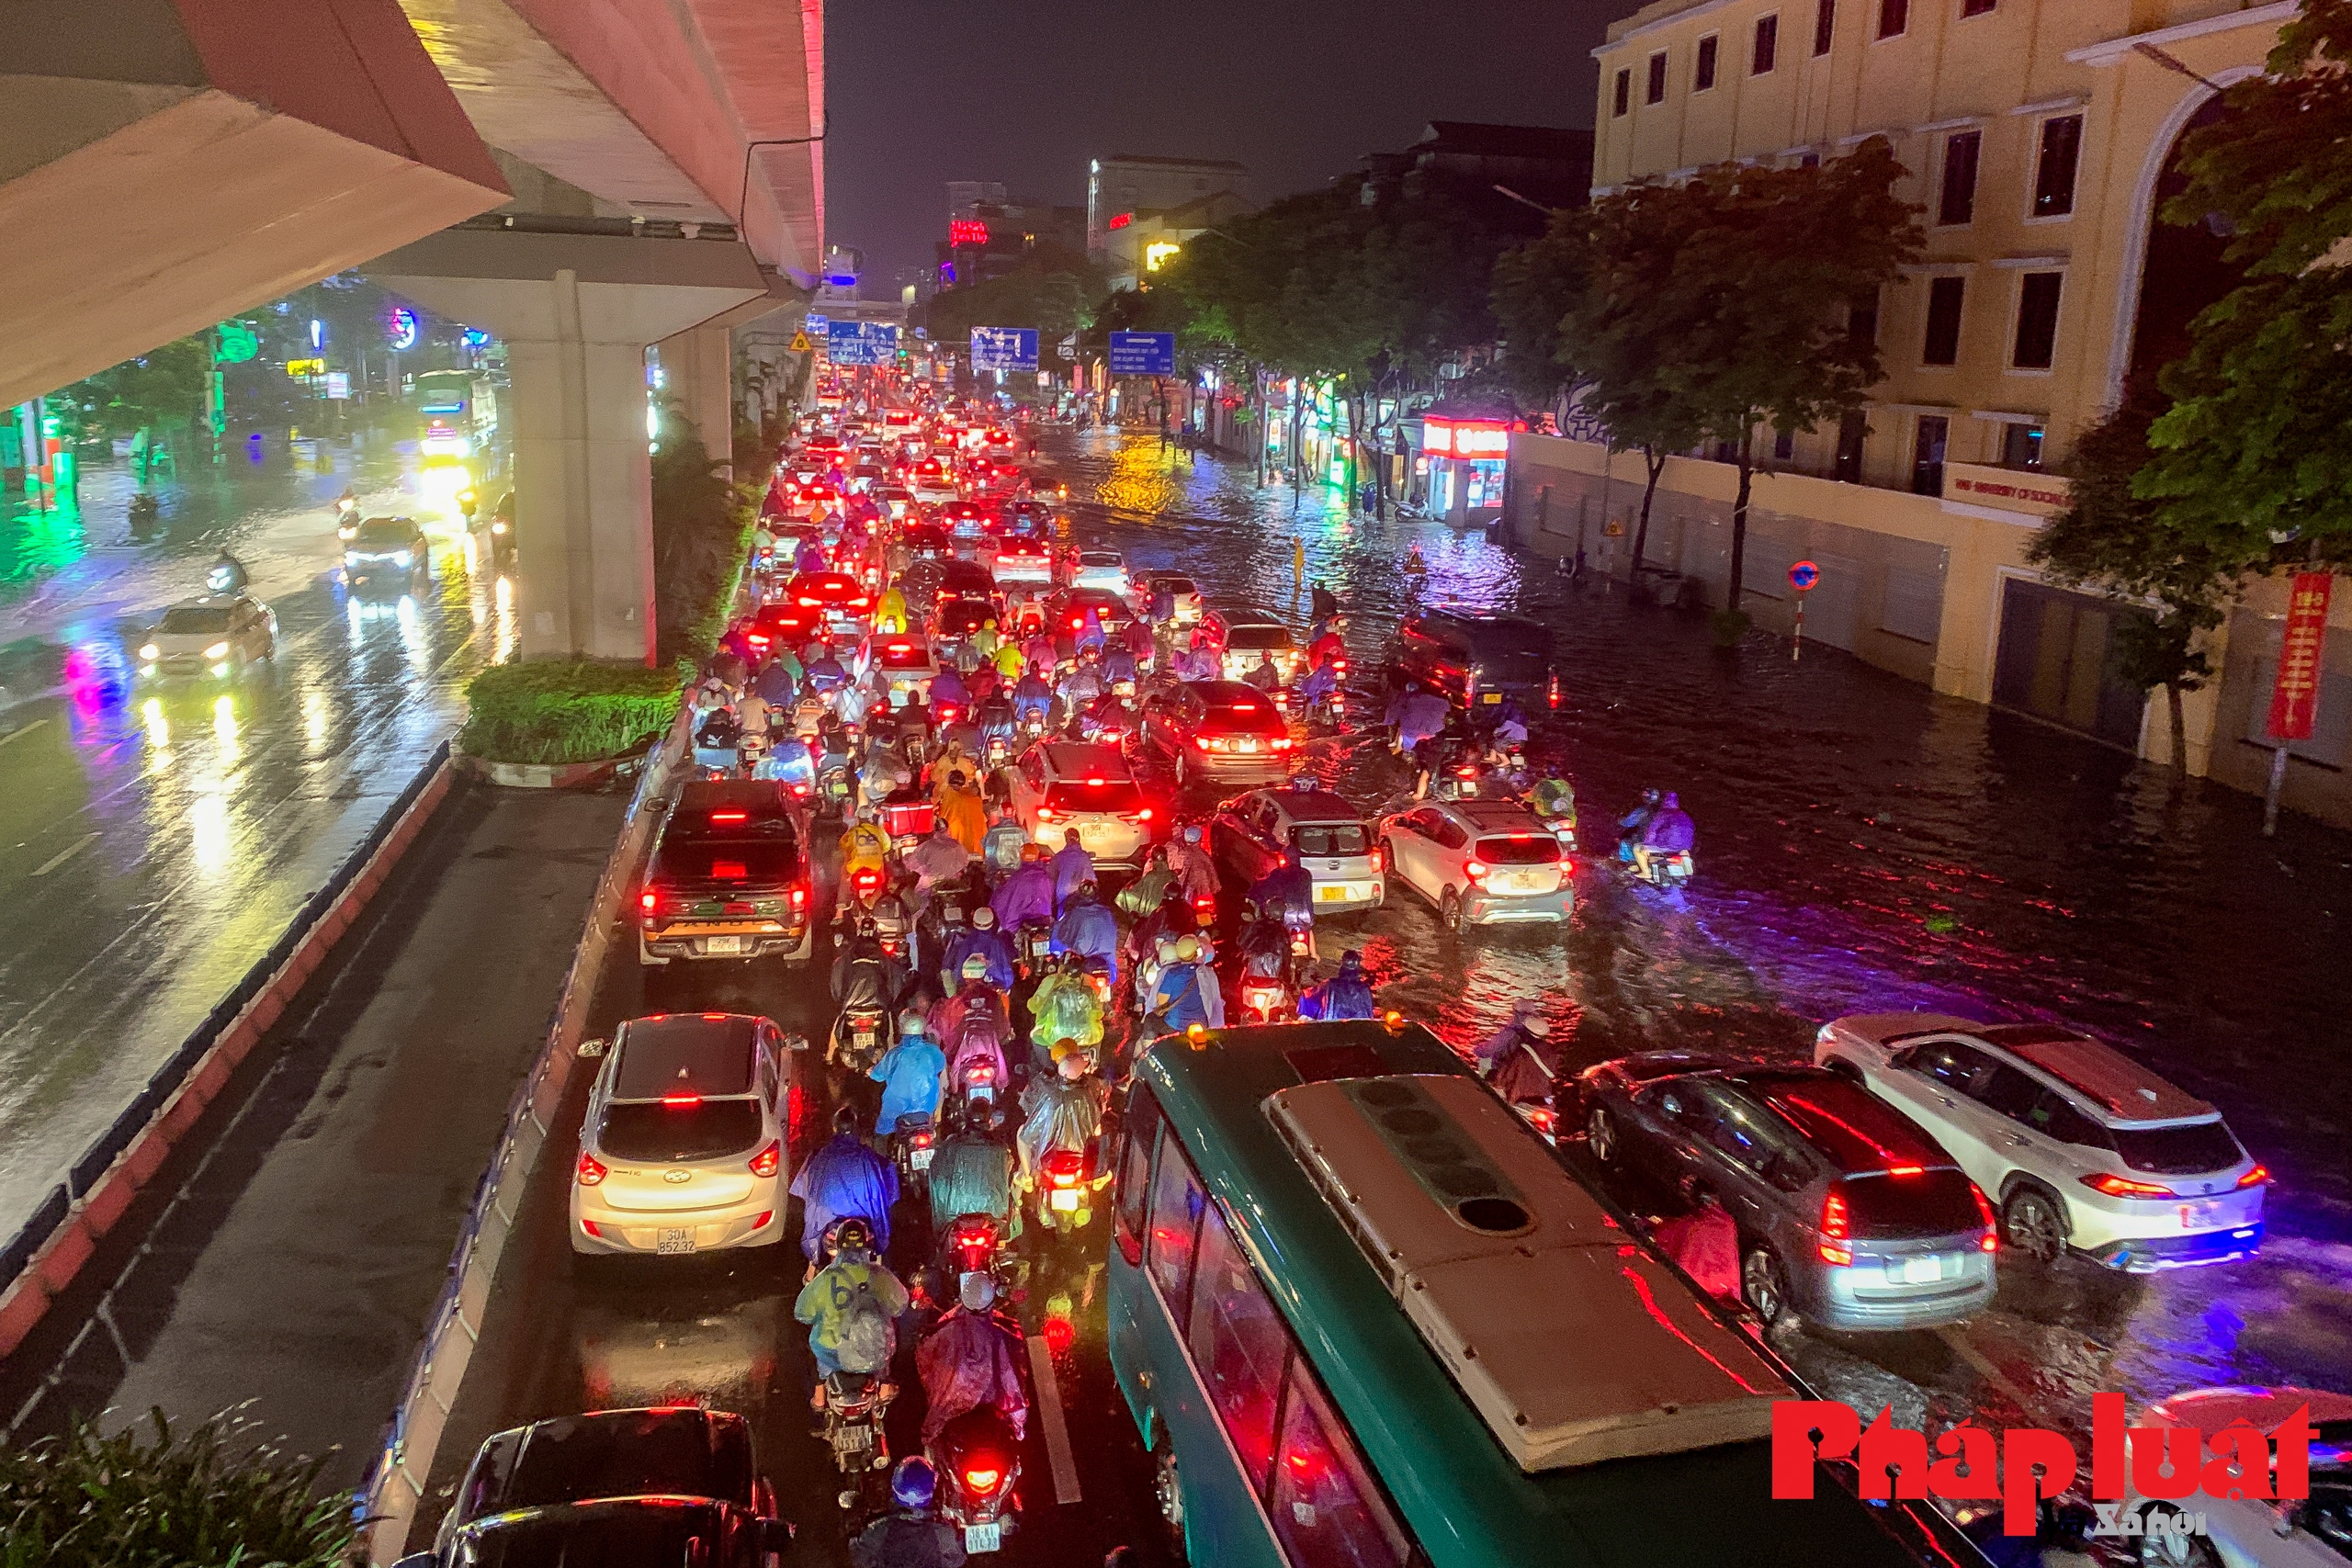 Ngập úng, tắc đường kéo dài sau cơn mưa lớn tại Hà Nội